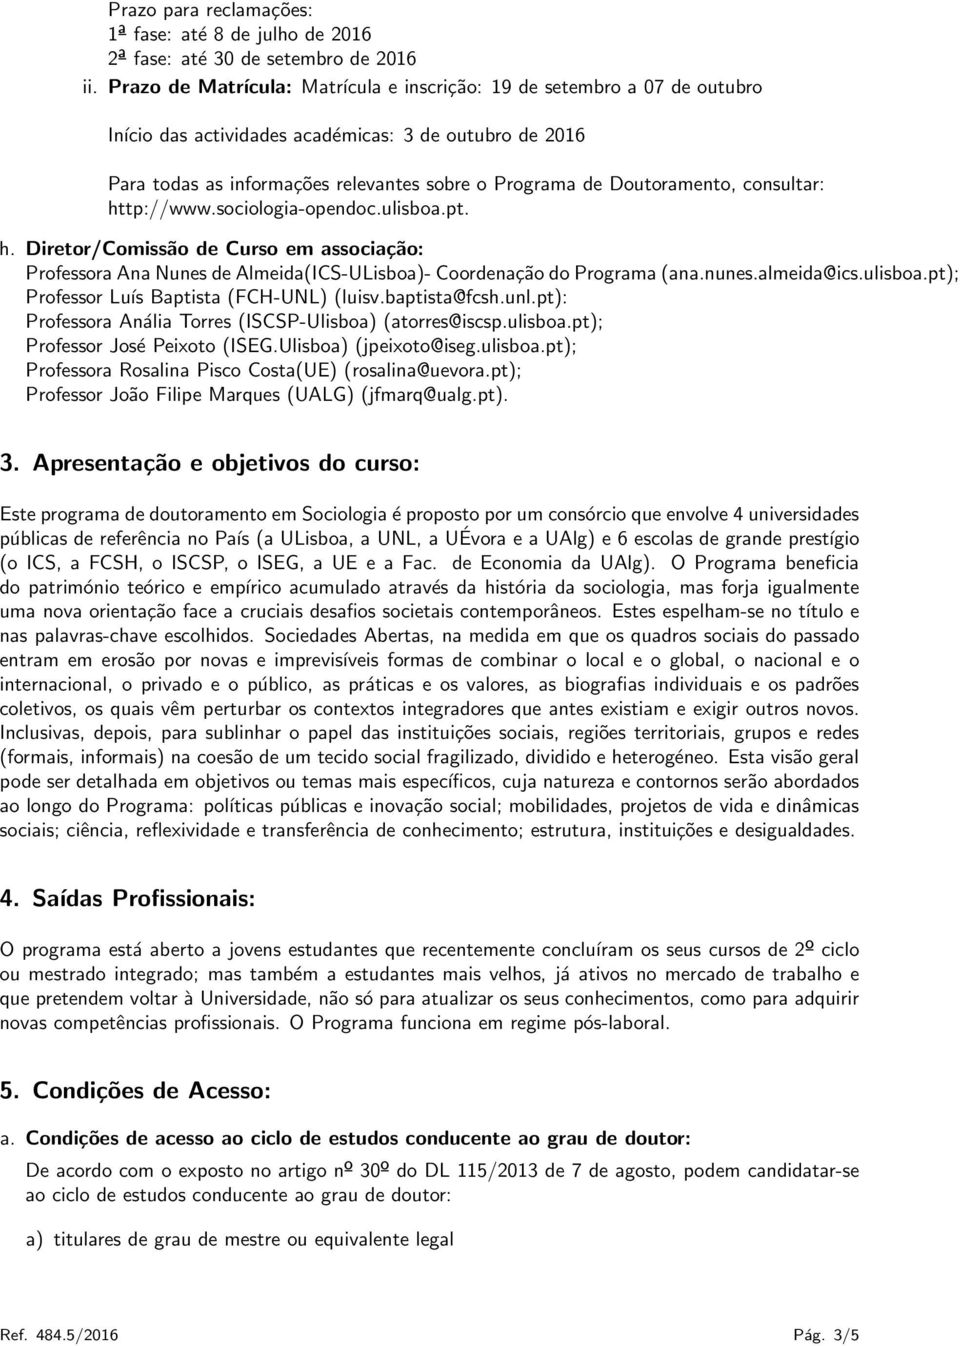 Doutoramento, consultar: http://www.sociologia-opendoc.ulisboa.pt. h. Diretor/Comissão de Curso em associação: Professora Ana Nunes de Almeida(ICS-ULisboa)- Coordenação do Programa (ana.nunes.